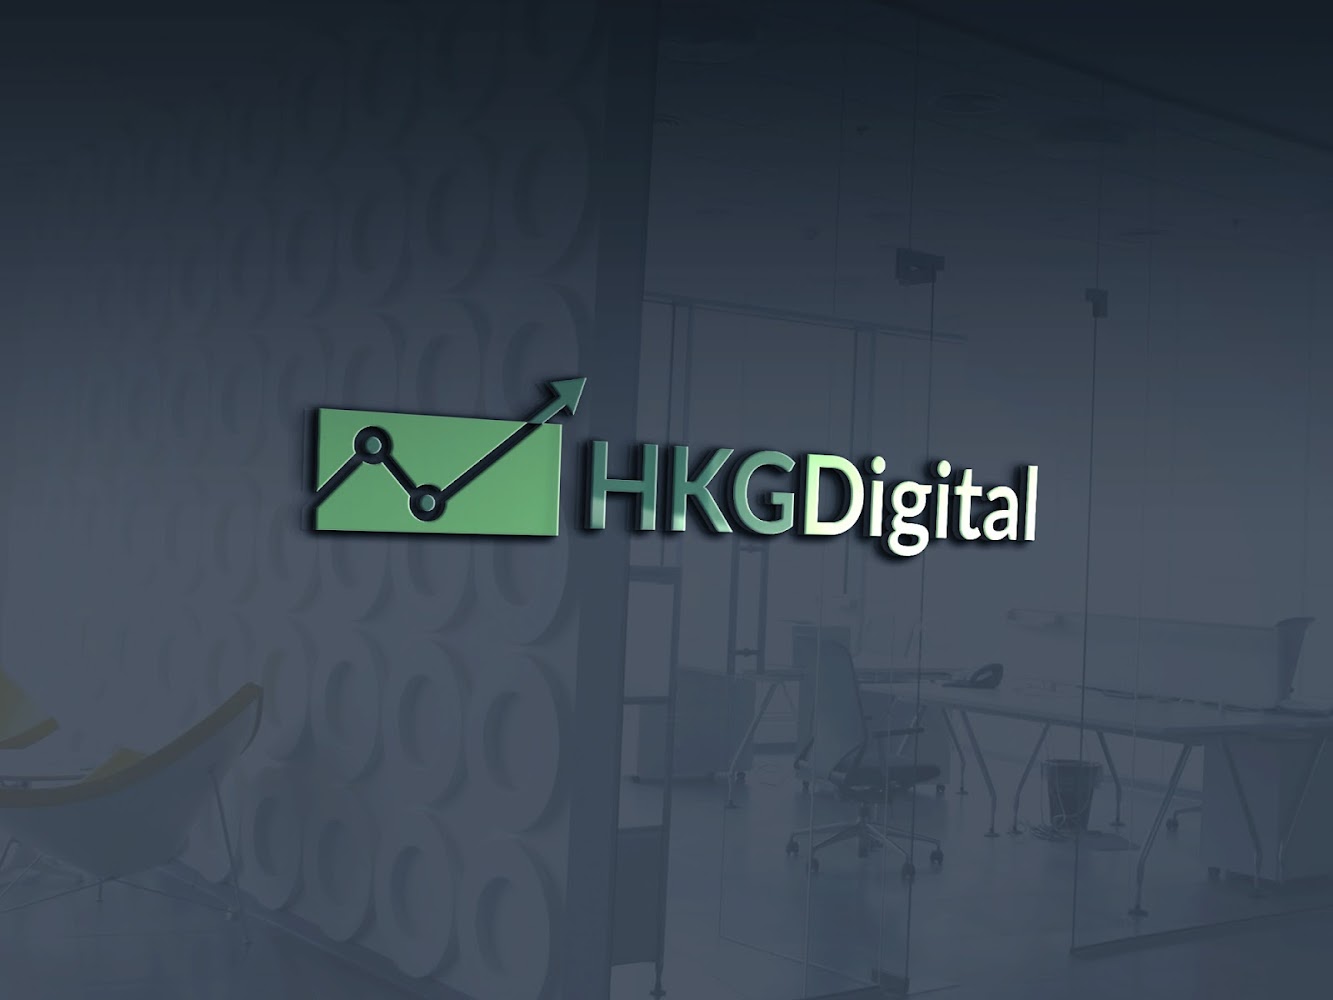 HKG Digital